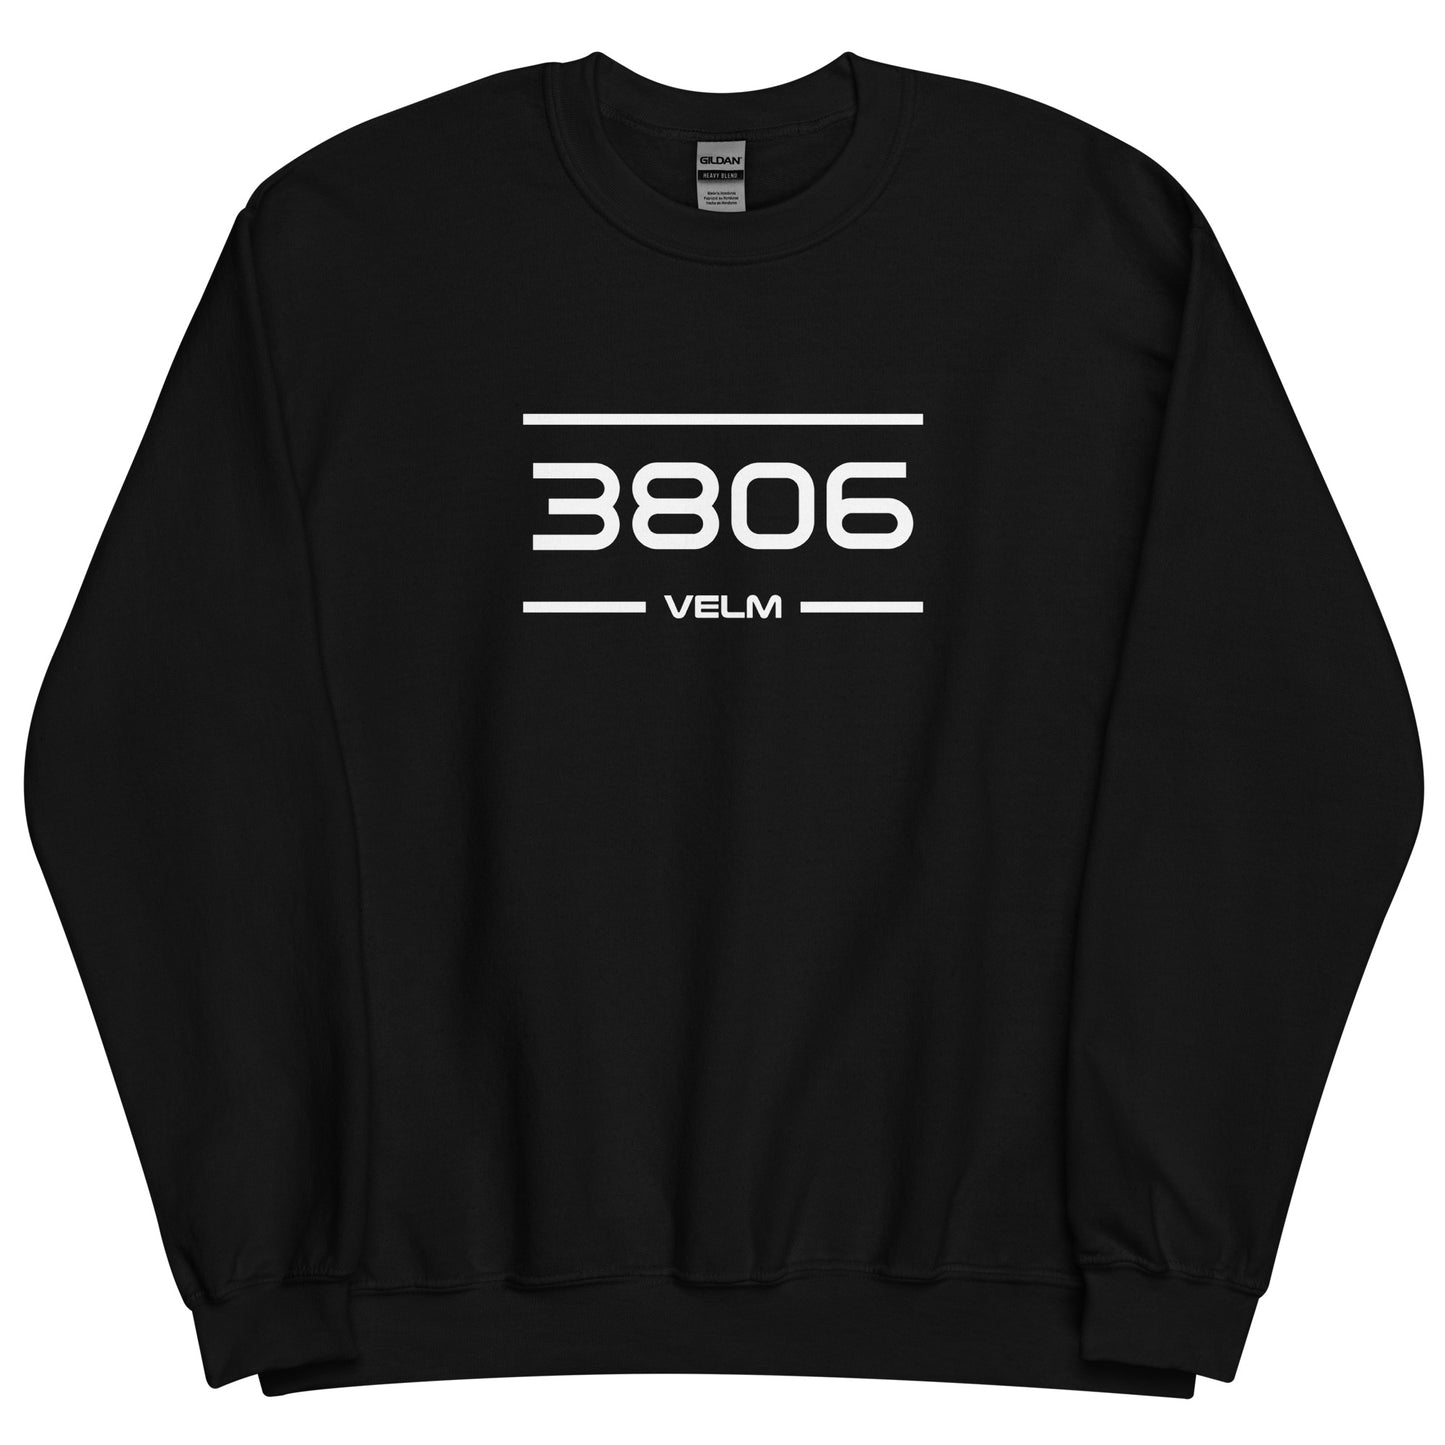 Sweater - 3806 - Velm (M/V)